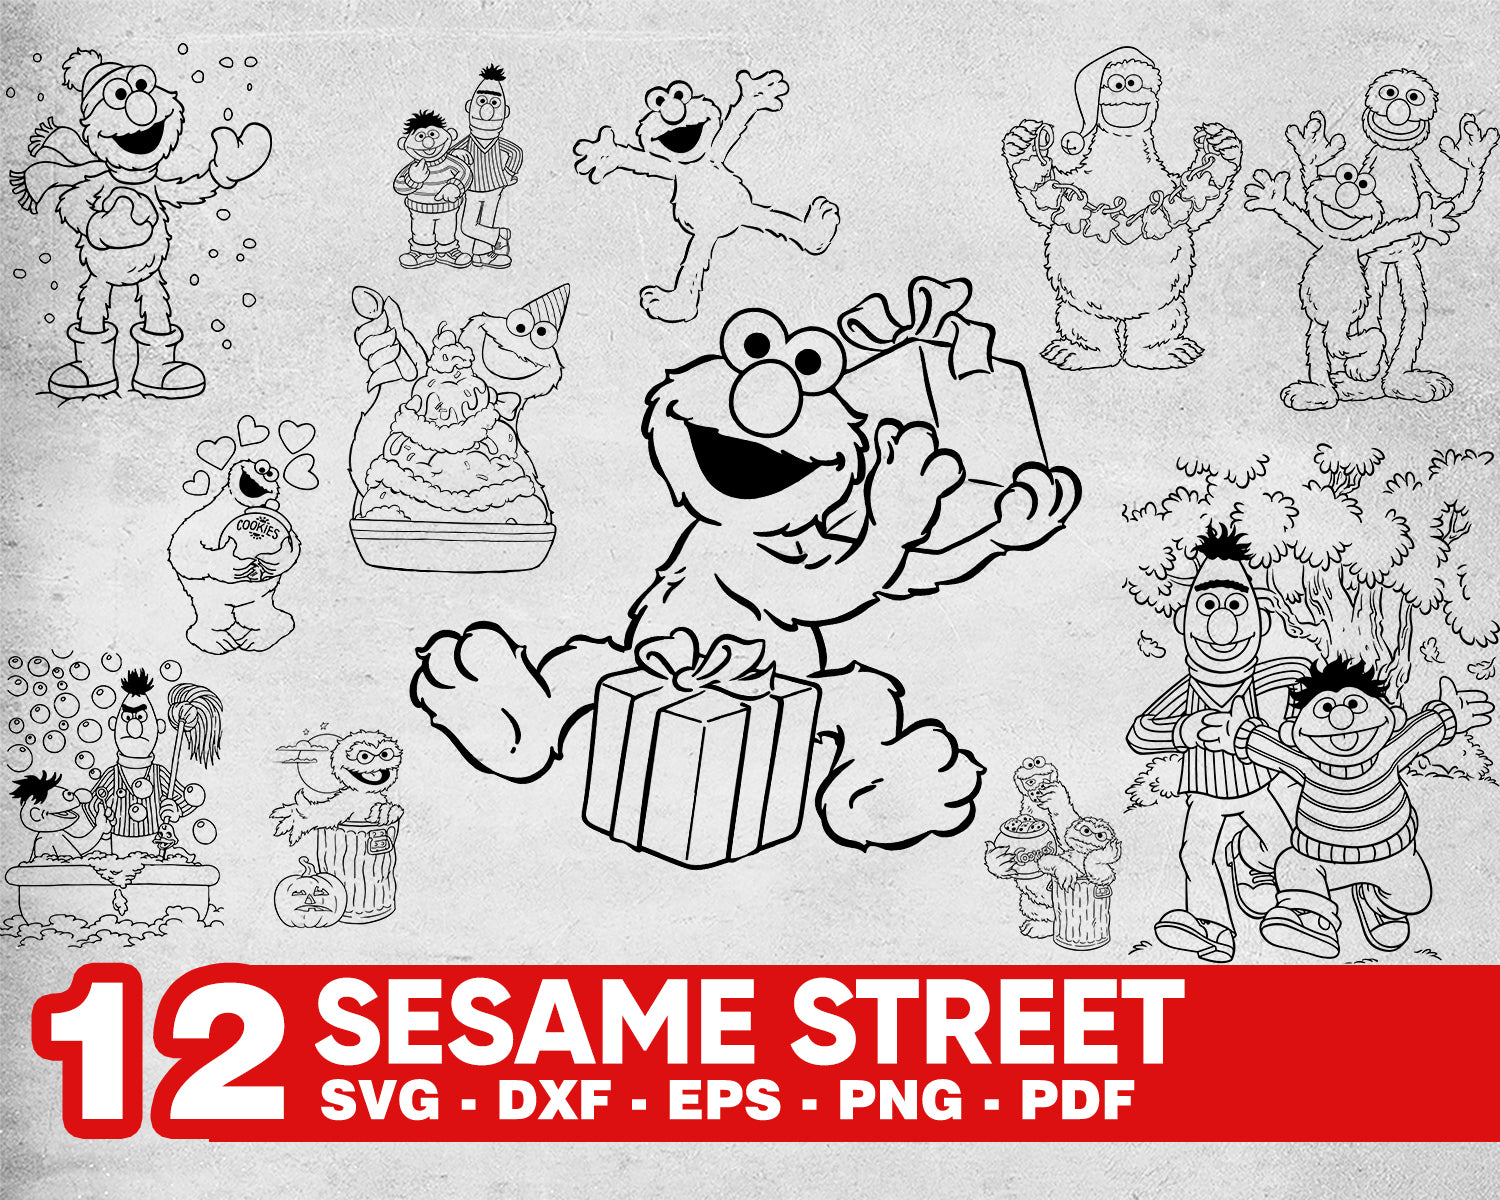 Download Sesame Street Svg Sesame Street Svg Ai Dxf Png Sesame Street Svg Elmo Clipartic